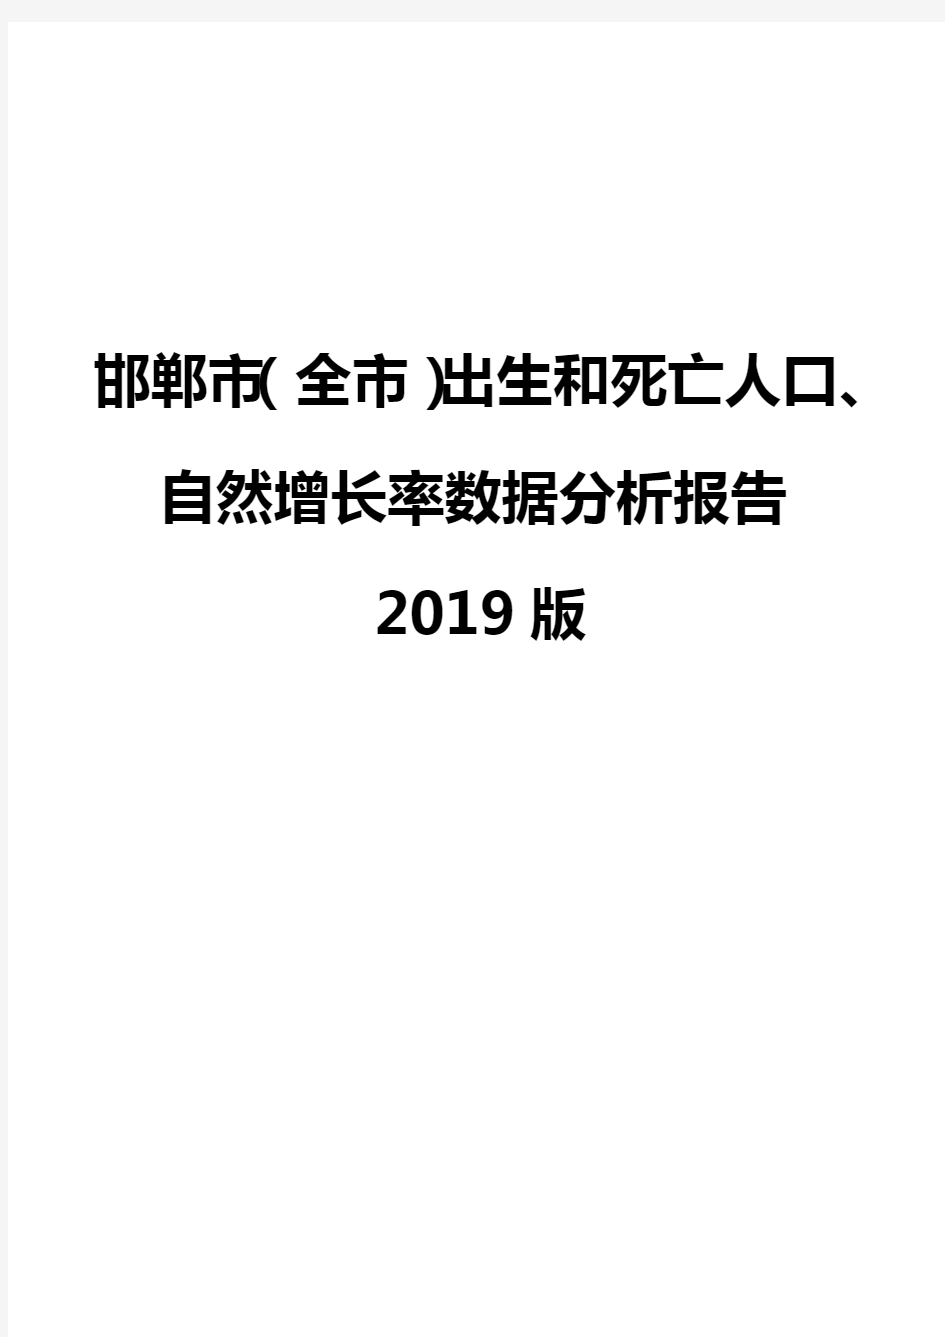 邯郸市(全市)出生和死亡人口、自然增长率数据分析报告2019版